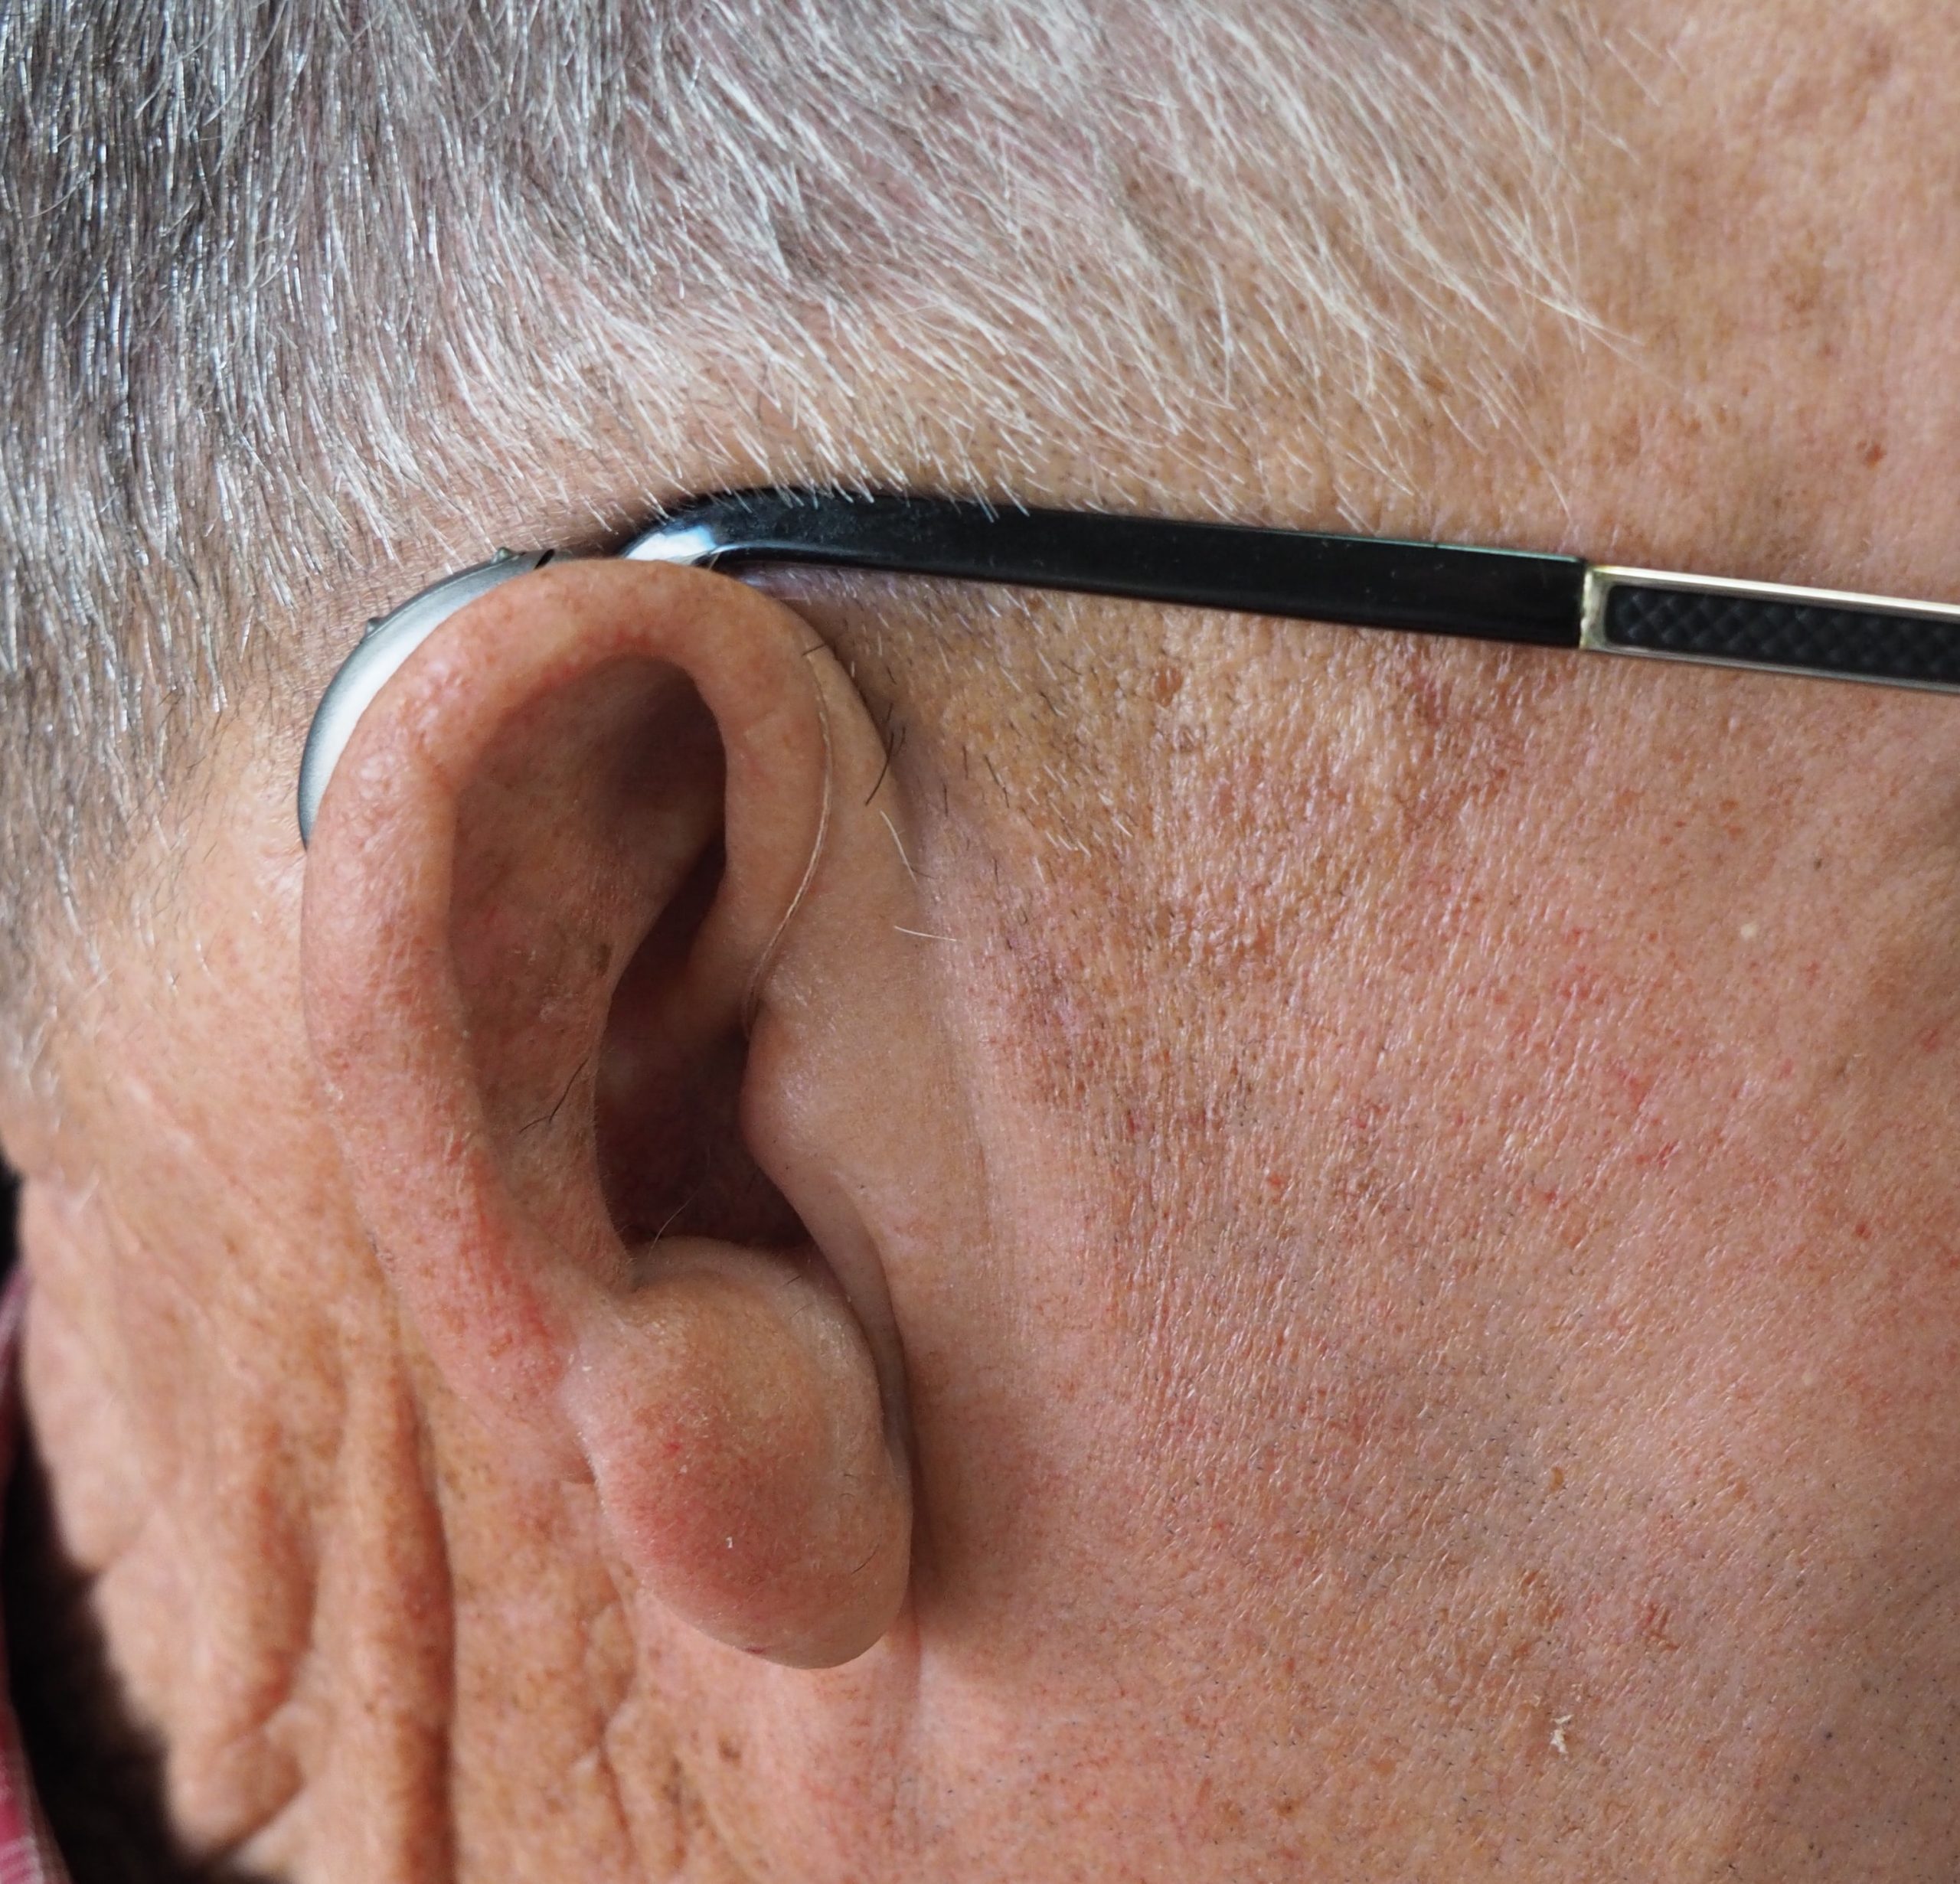 Hvordan får man et høreapparat? – Læger Formidler